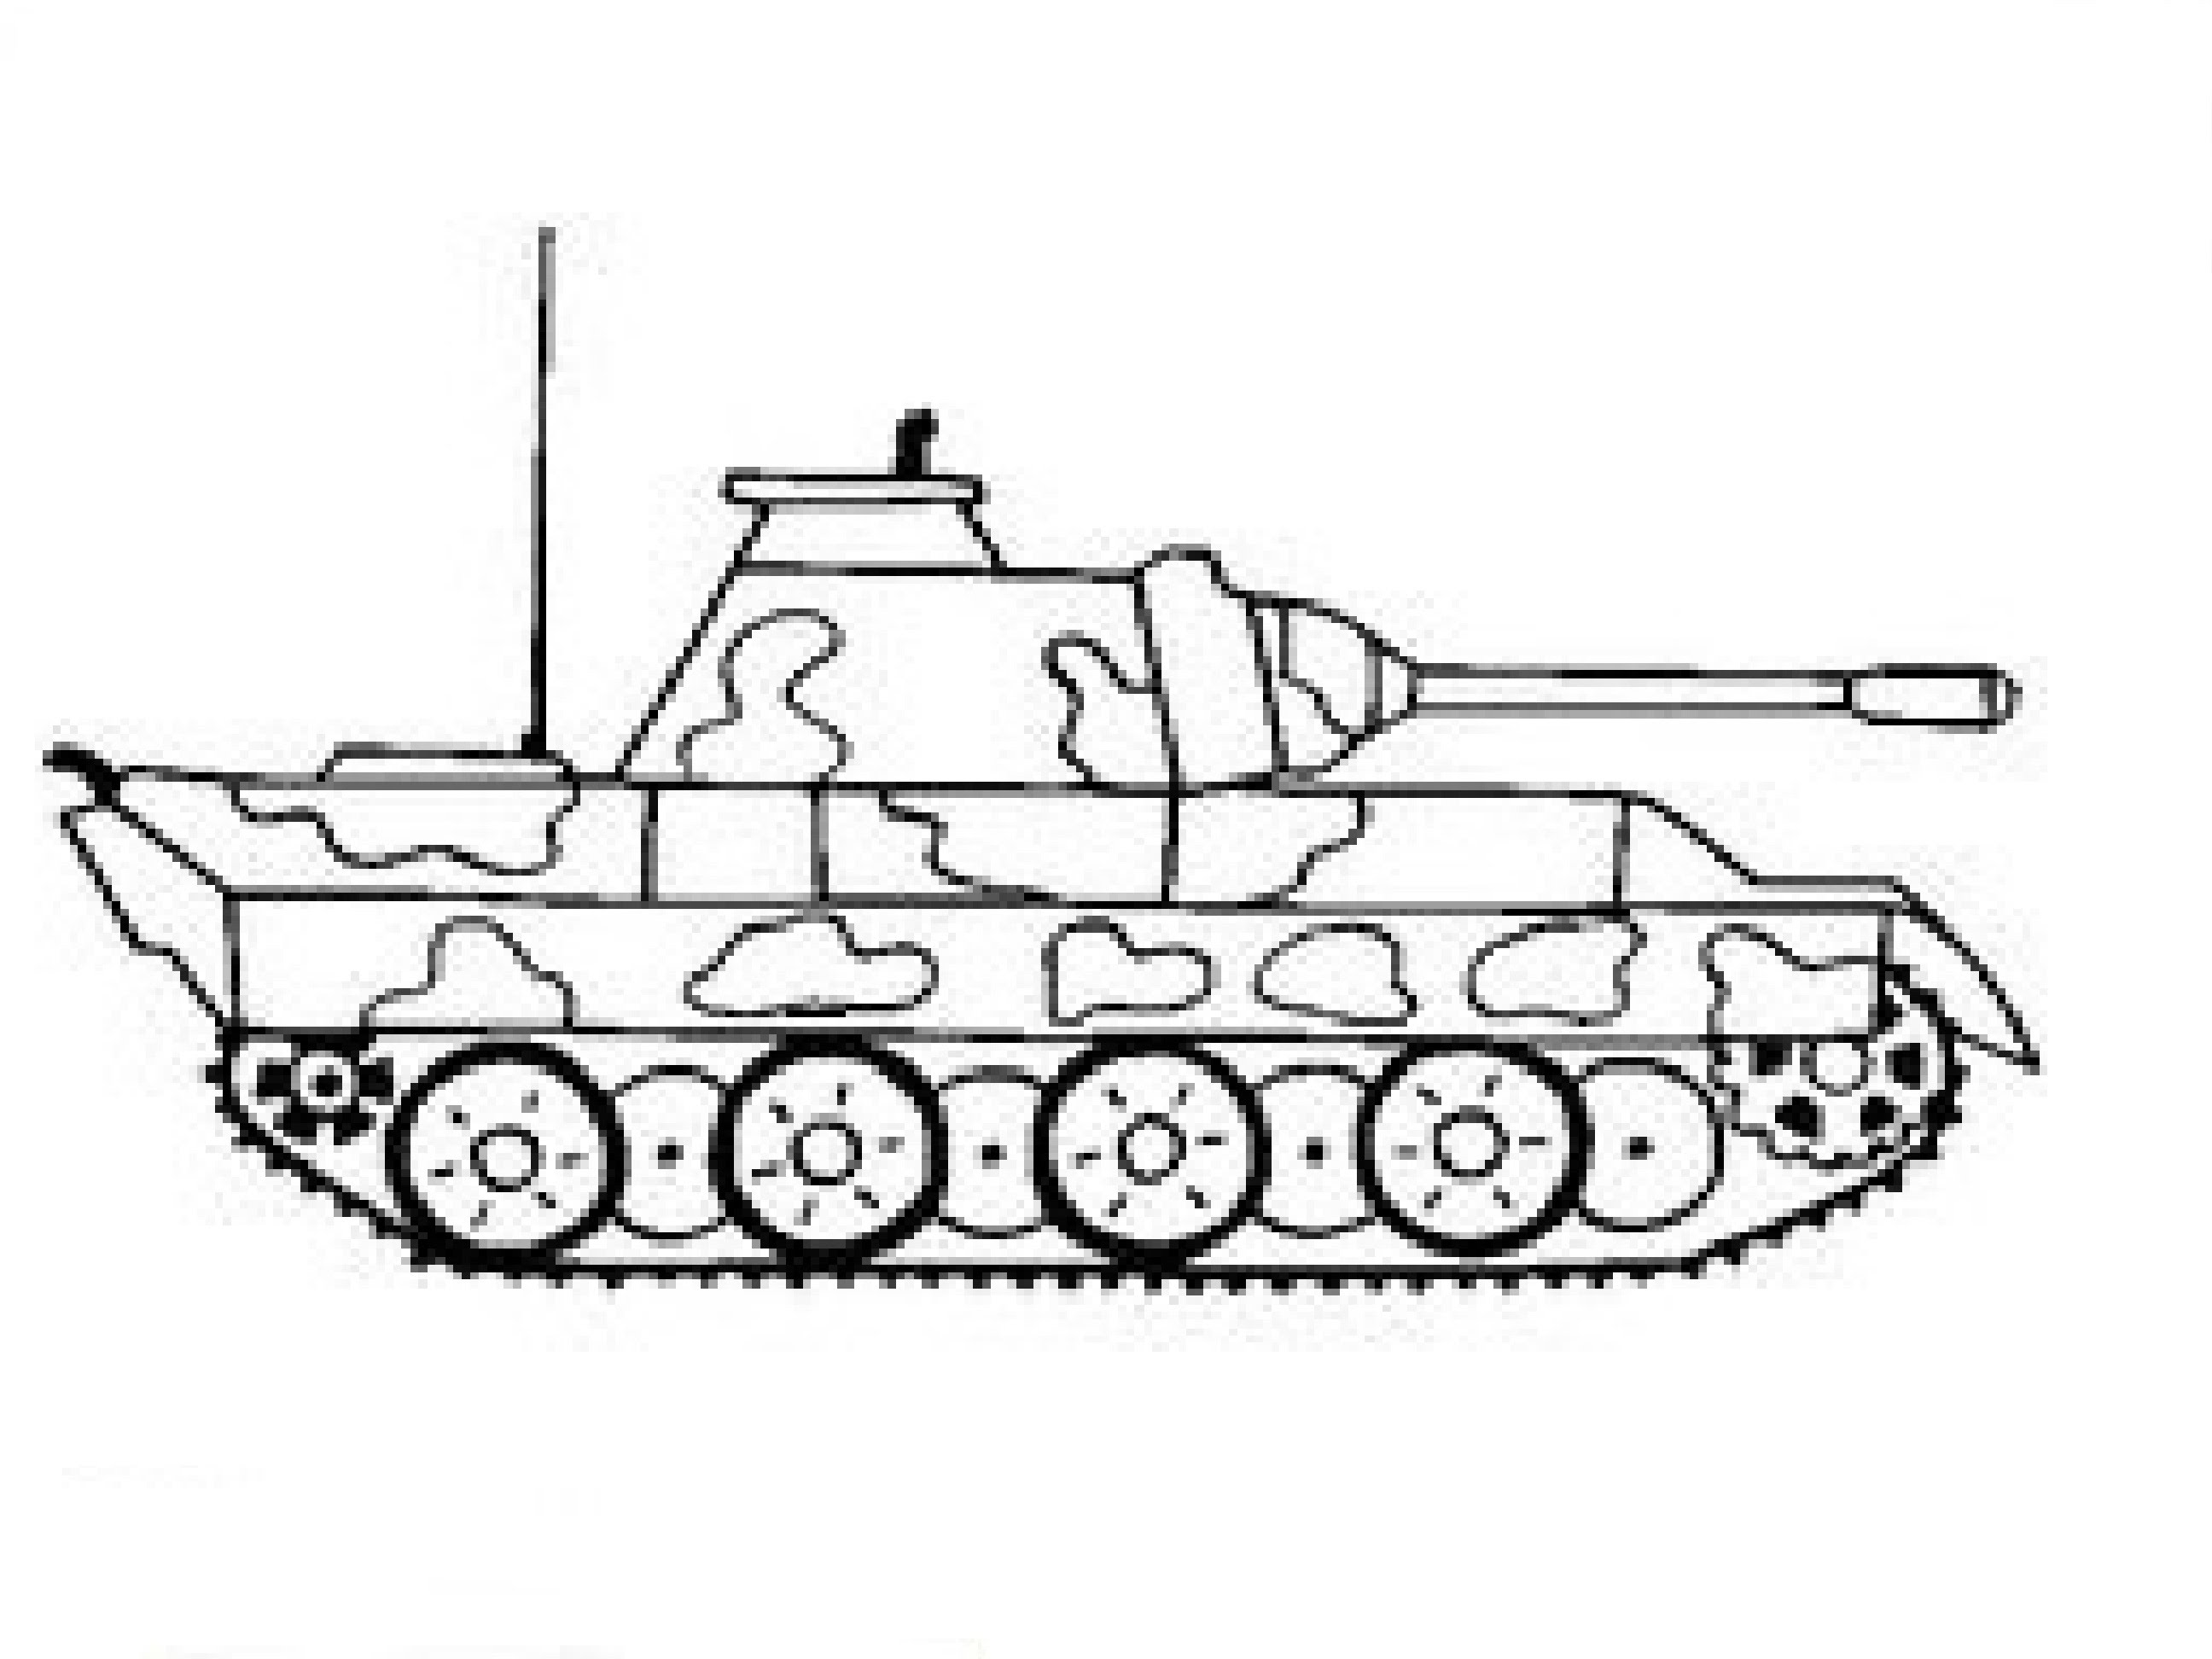 How to Draw a Tank / Ð?Ð°Ðº Ð½Ð°Ñ?Ð¸ÑÐ¾Ð²Ð°Ñ?Ñ? Ð¢Ð°Ð½Ðº - YouTube